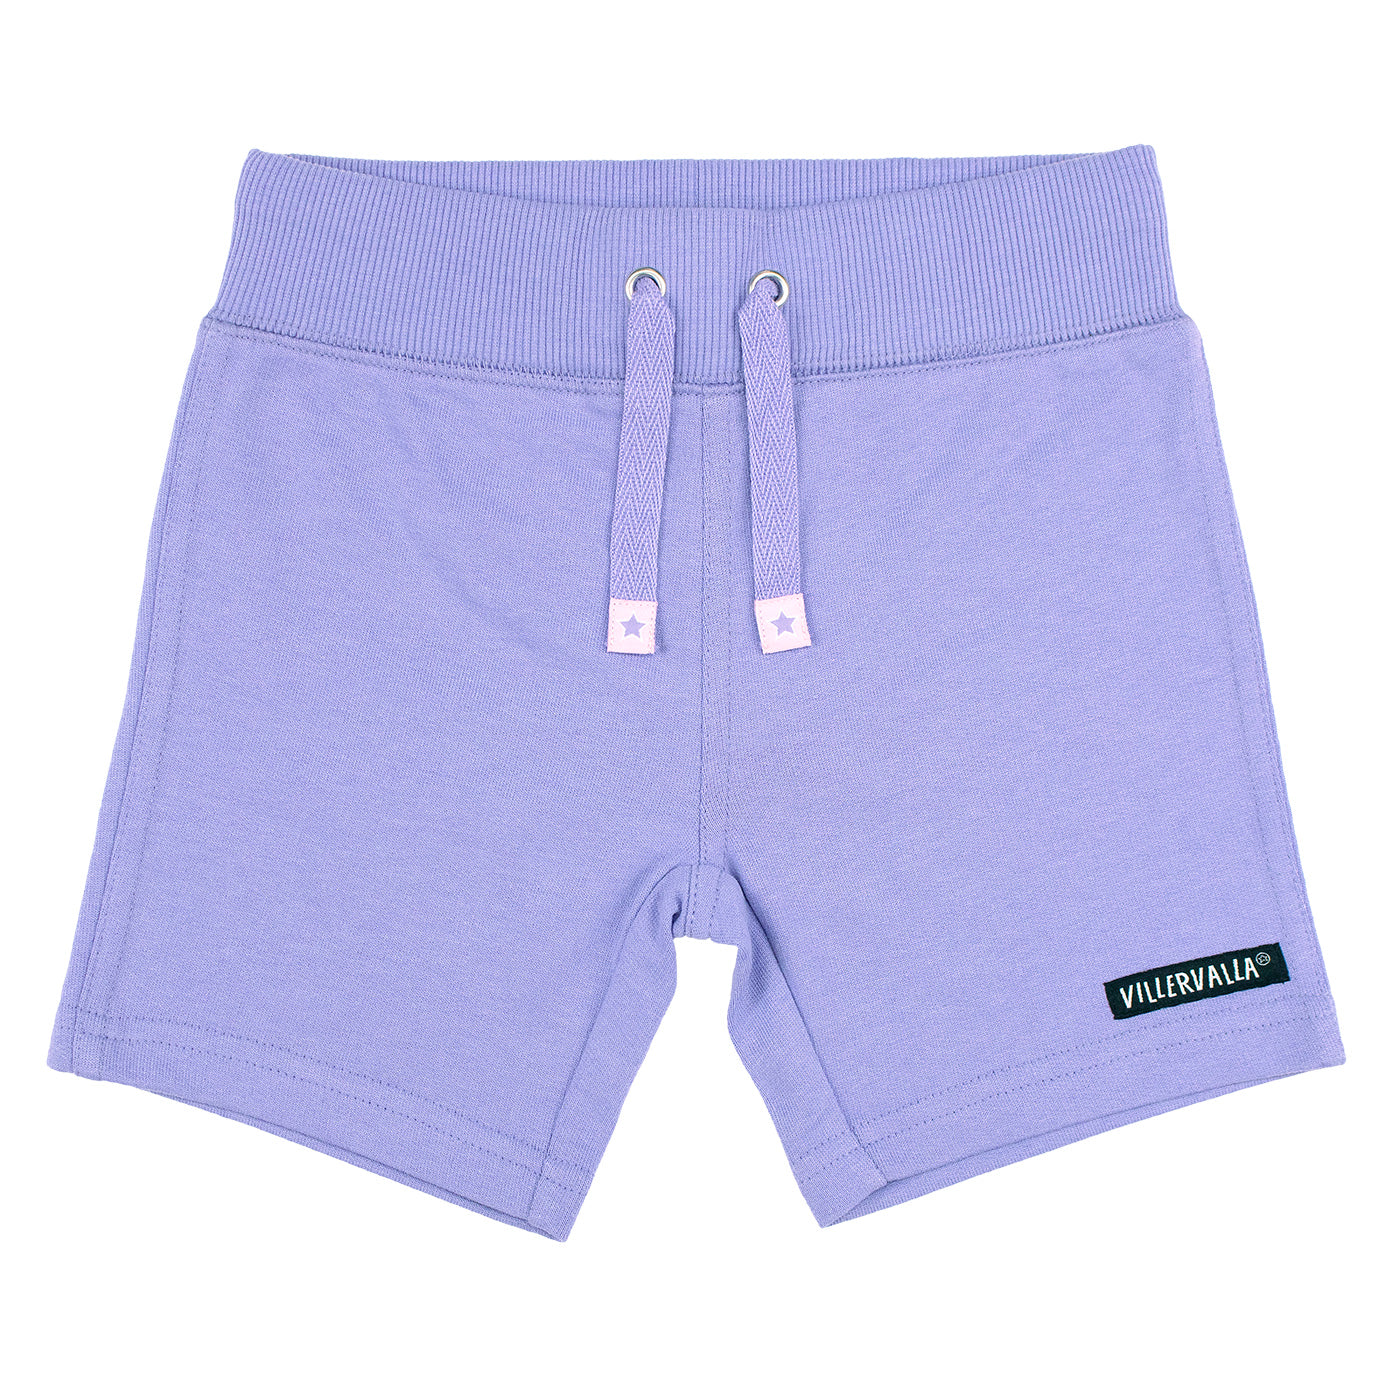 Villervalla - Basics - Relaxed Shorts - Lavender